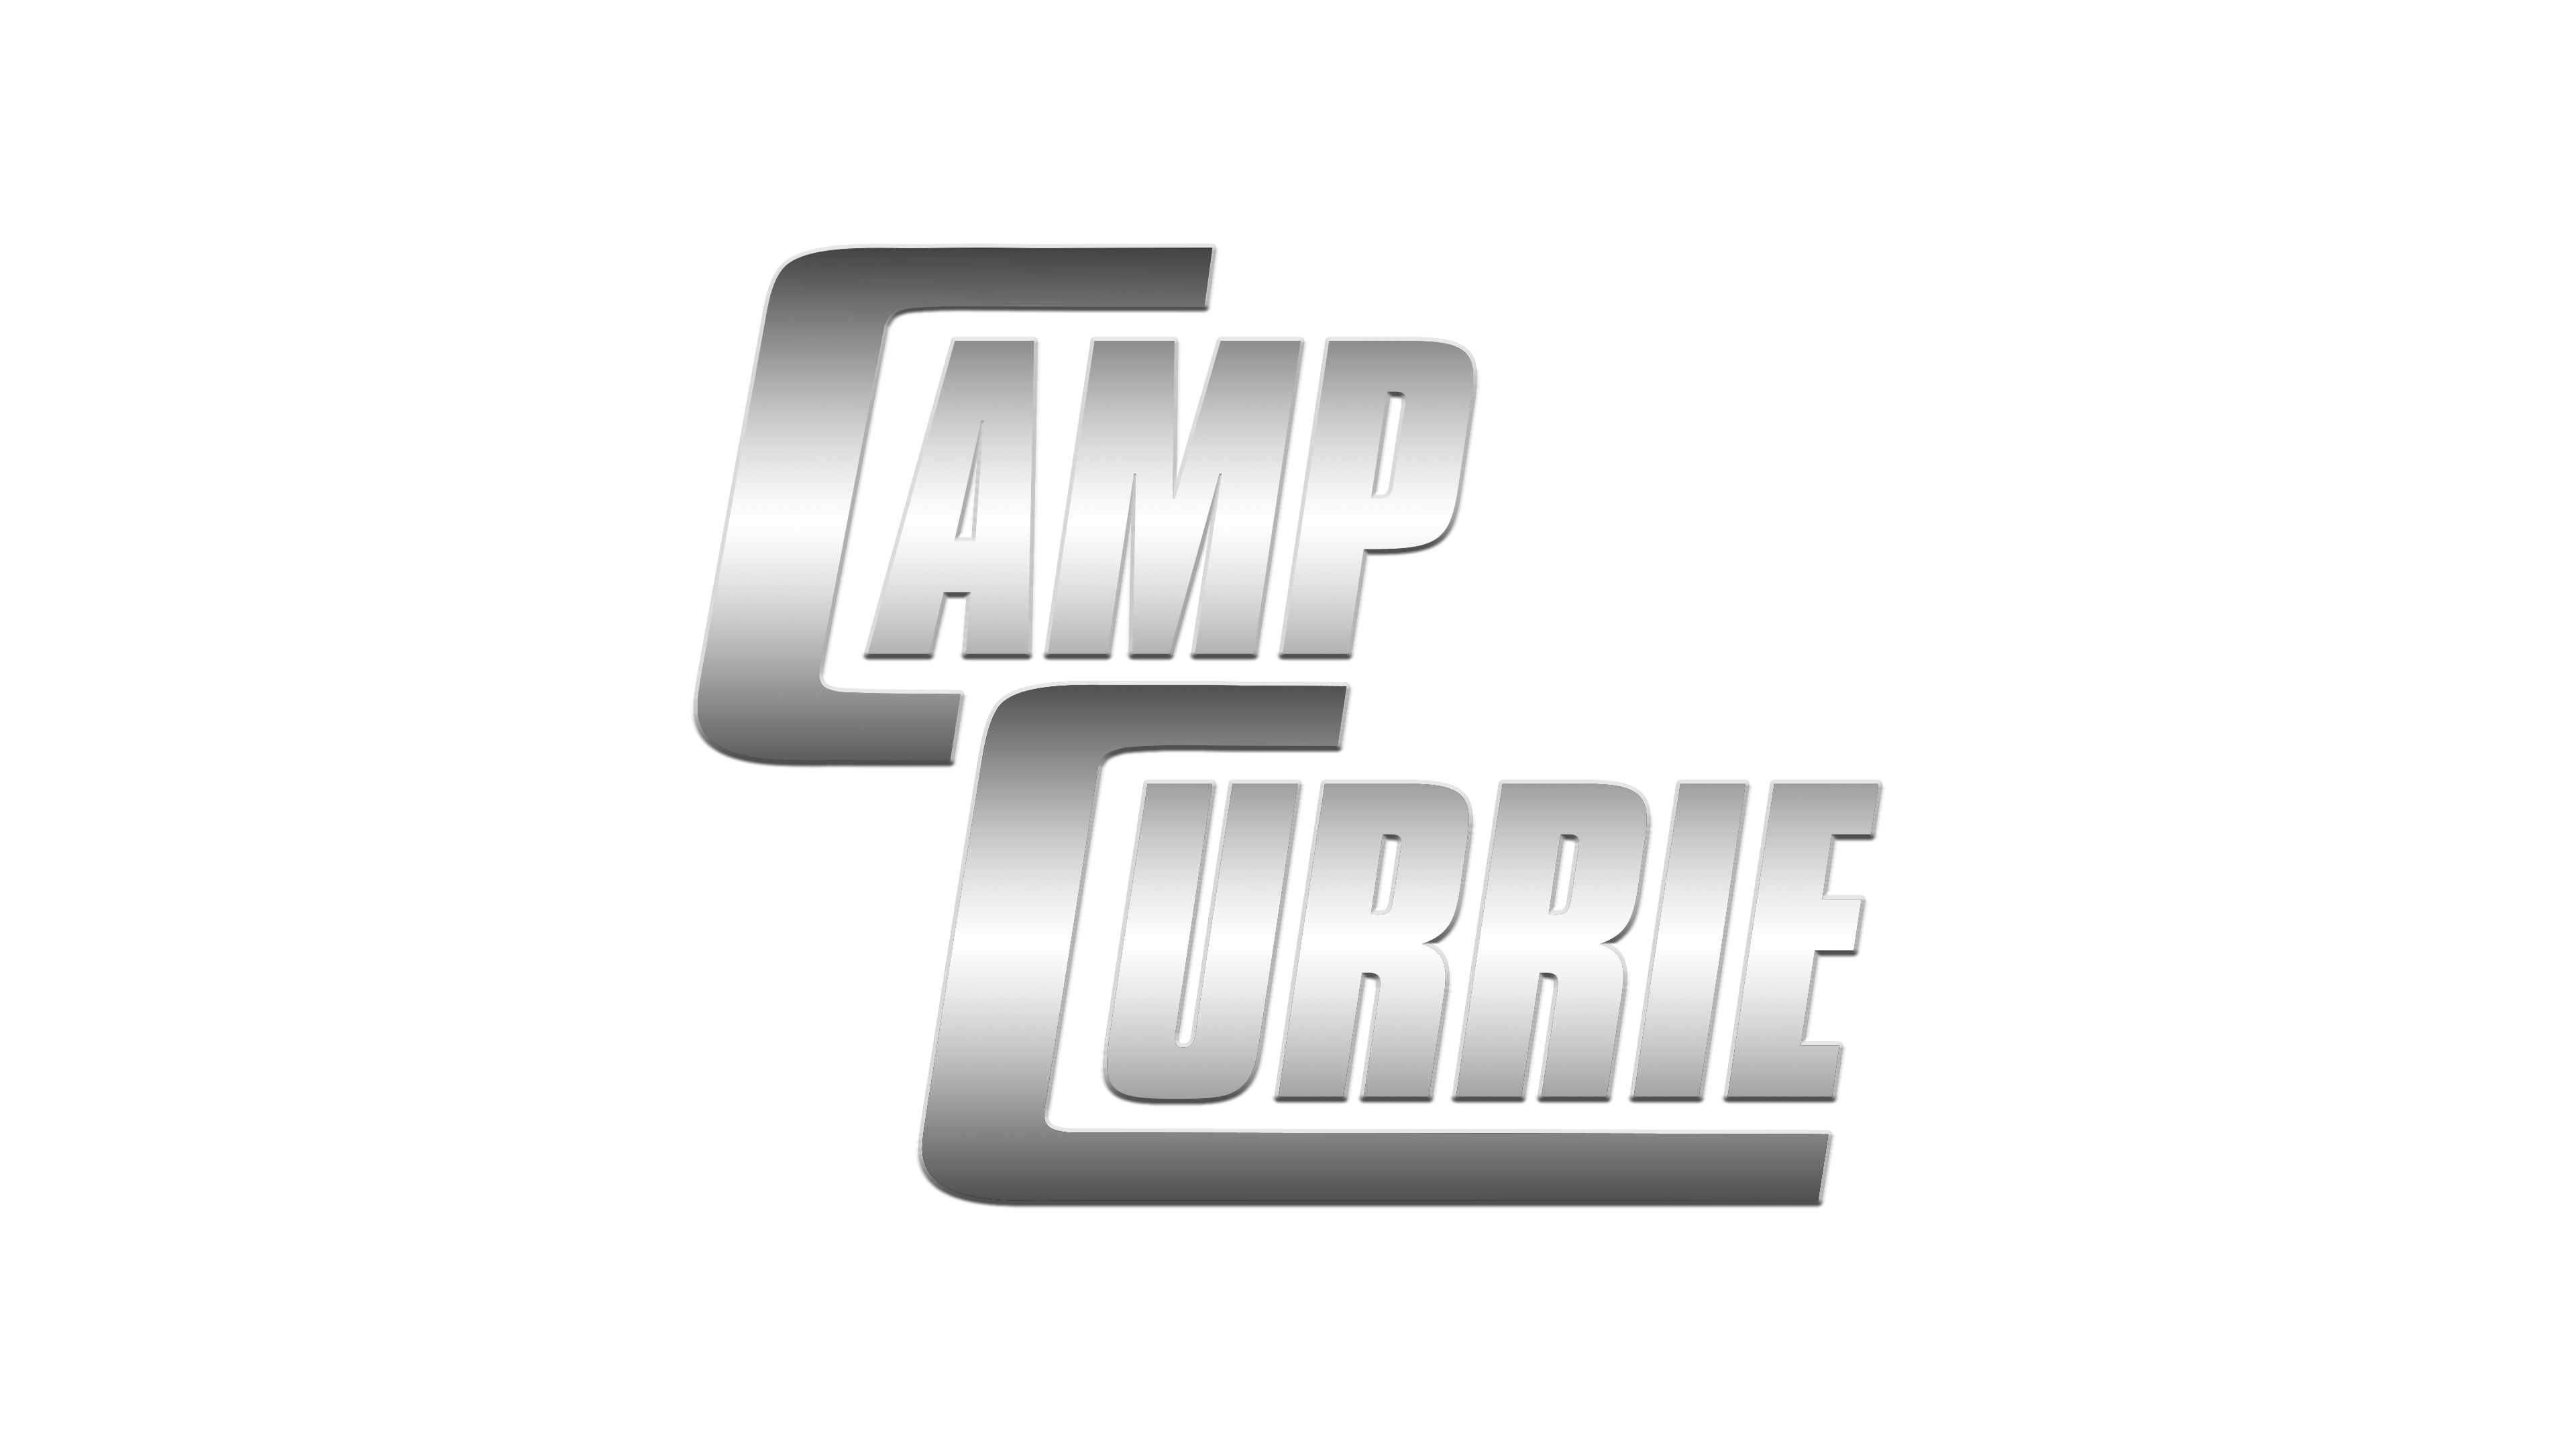 Logo Camp Curie